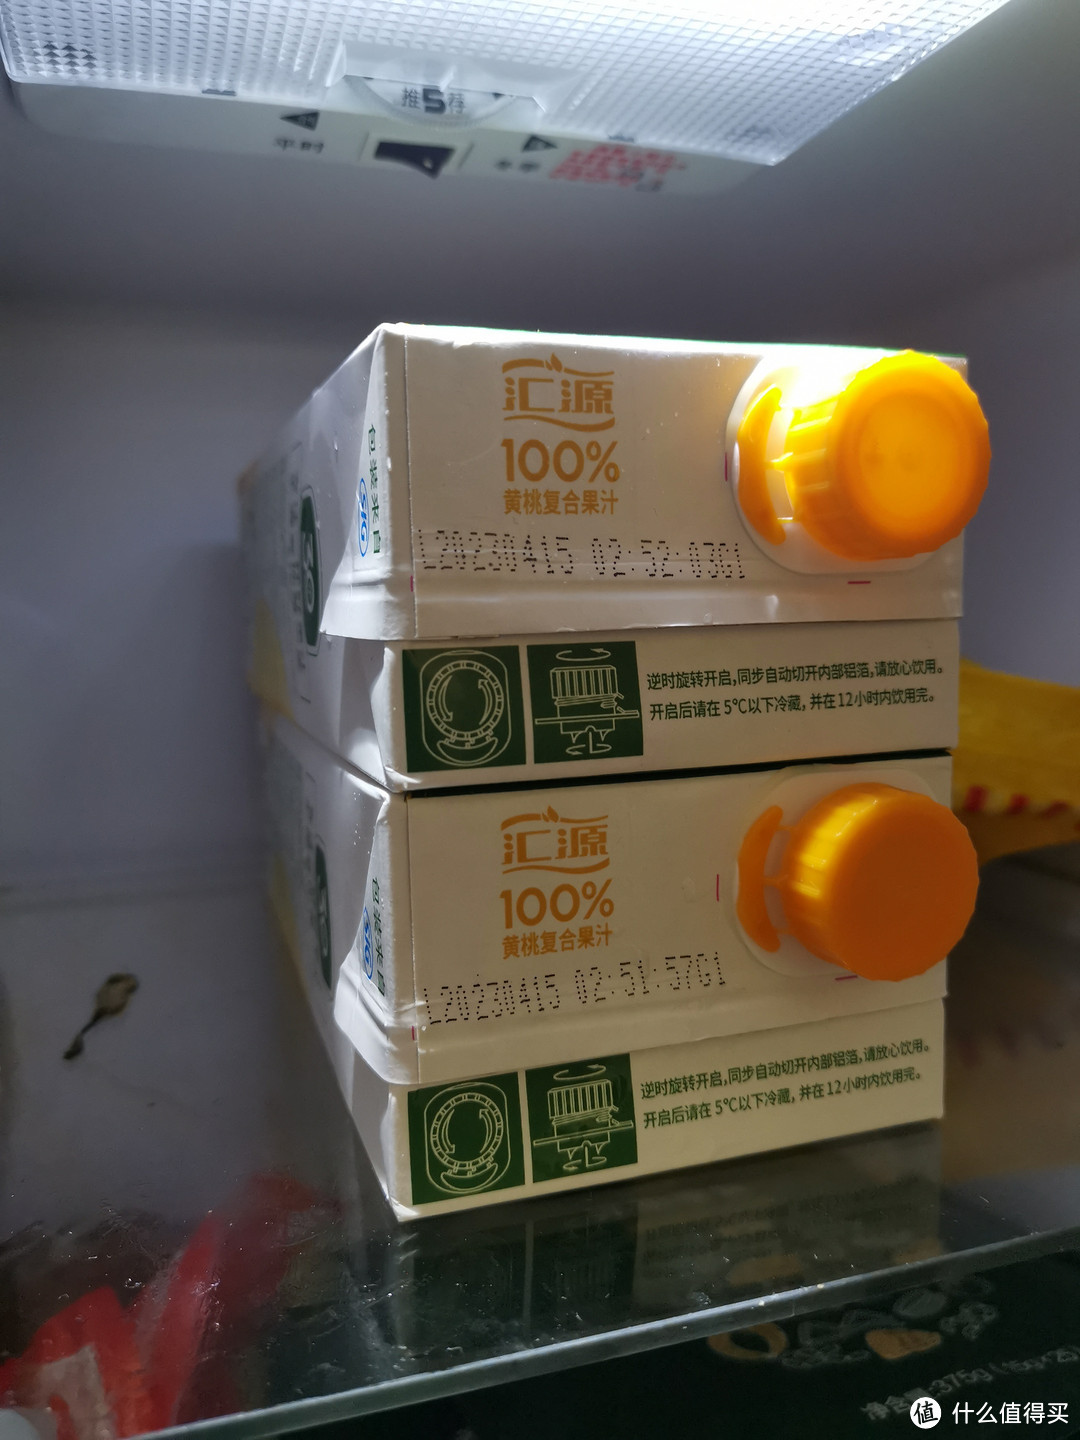 链接还是不能显示出来，标题是：汇源 易烊千玺同款 黄桃复合果汁 1L*2盒¥17.9